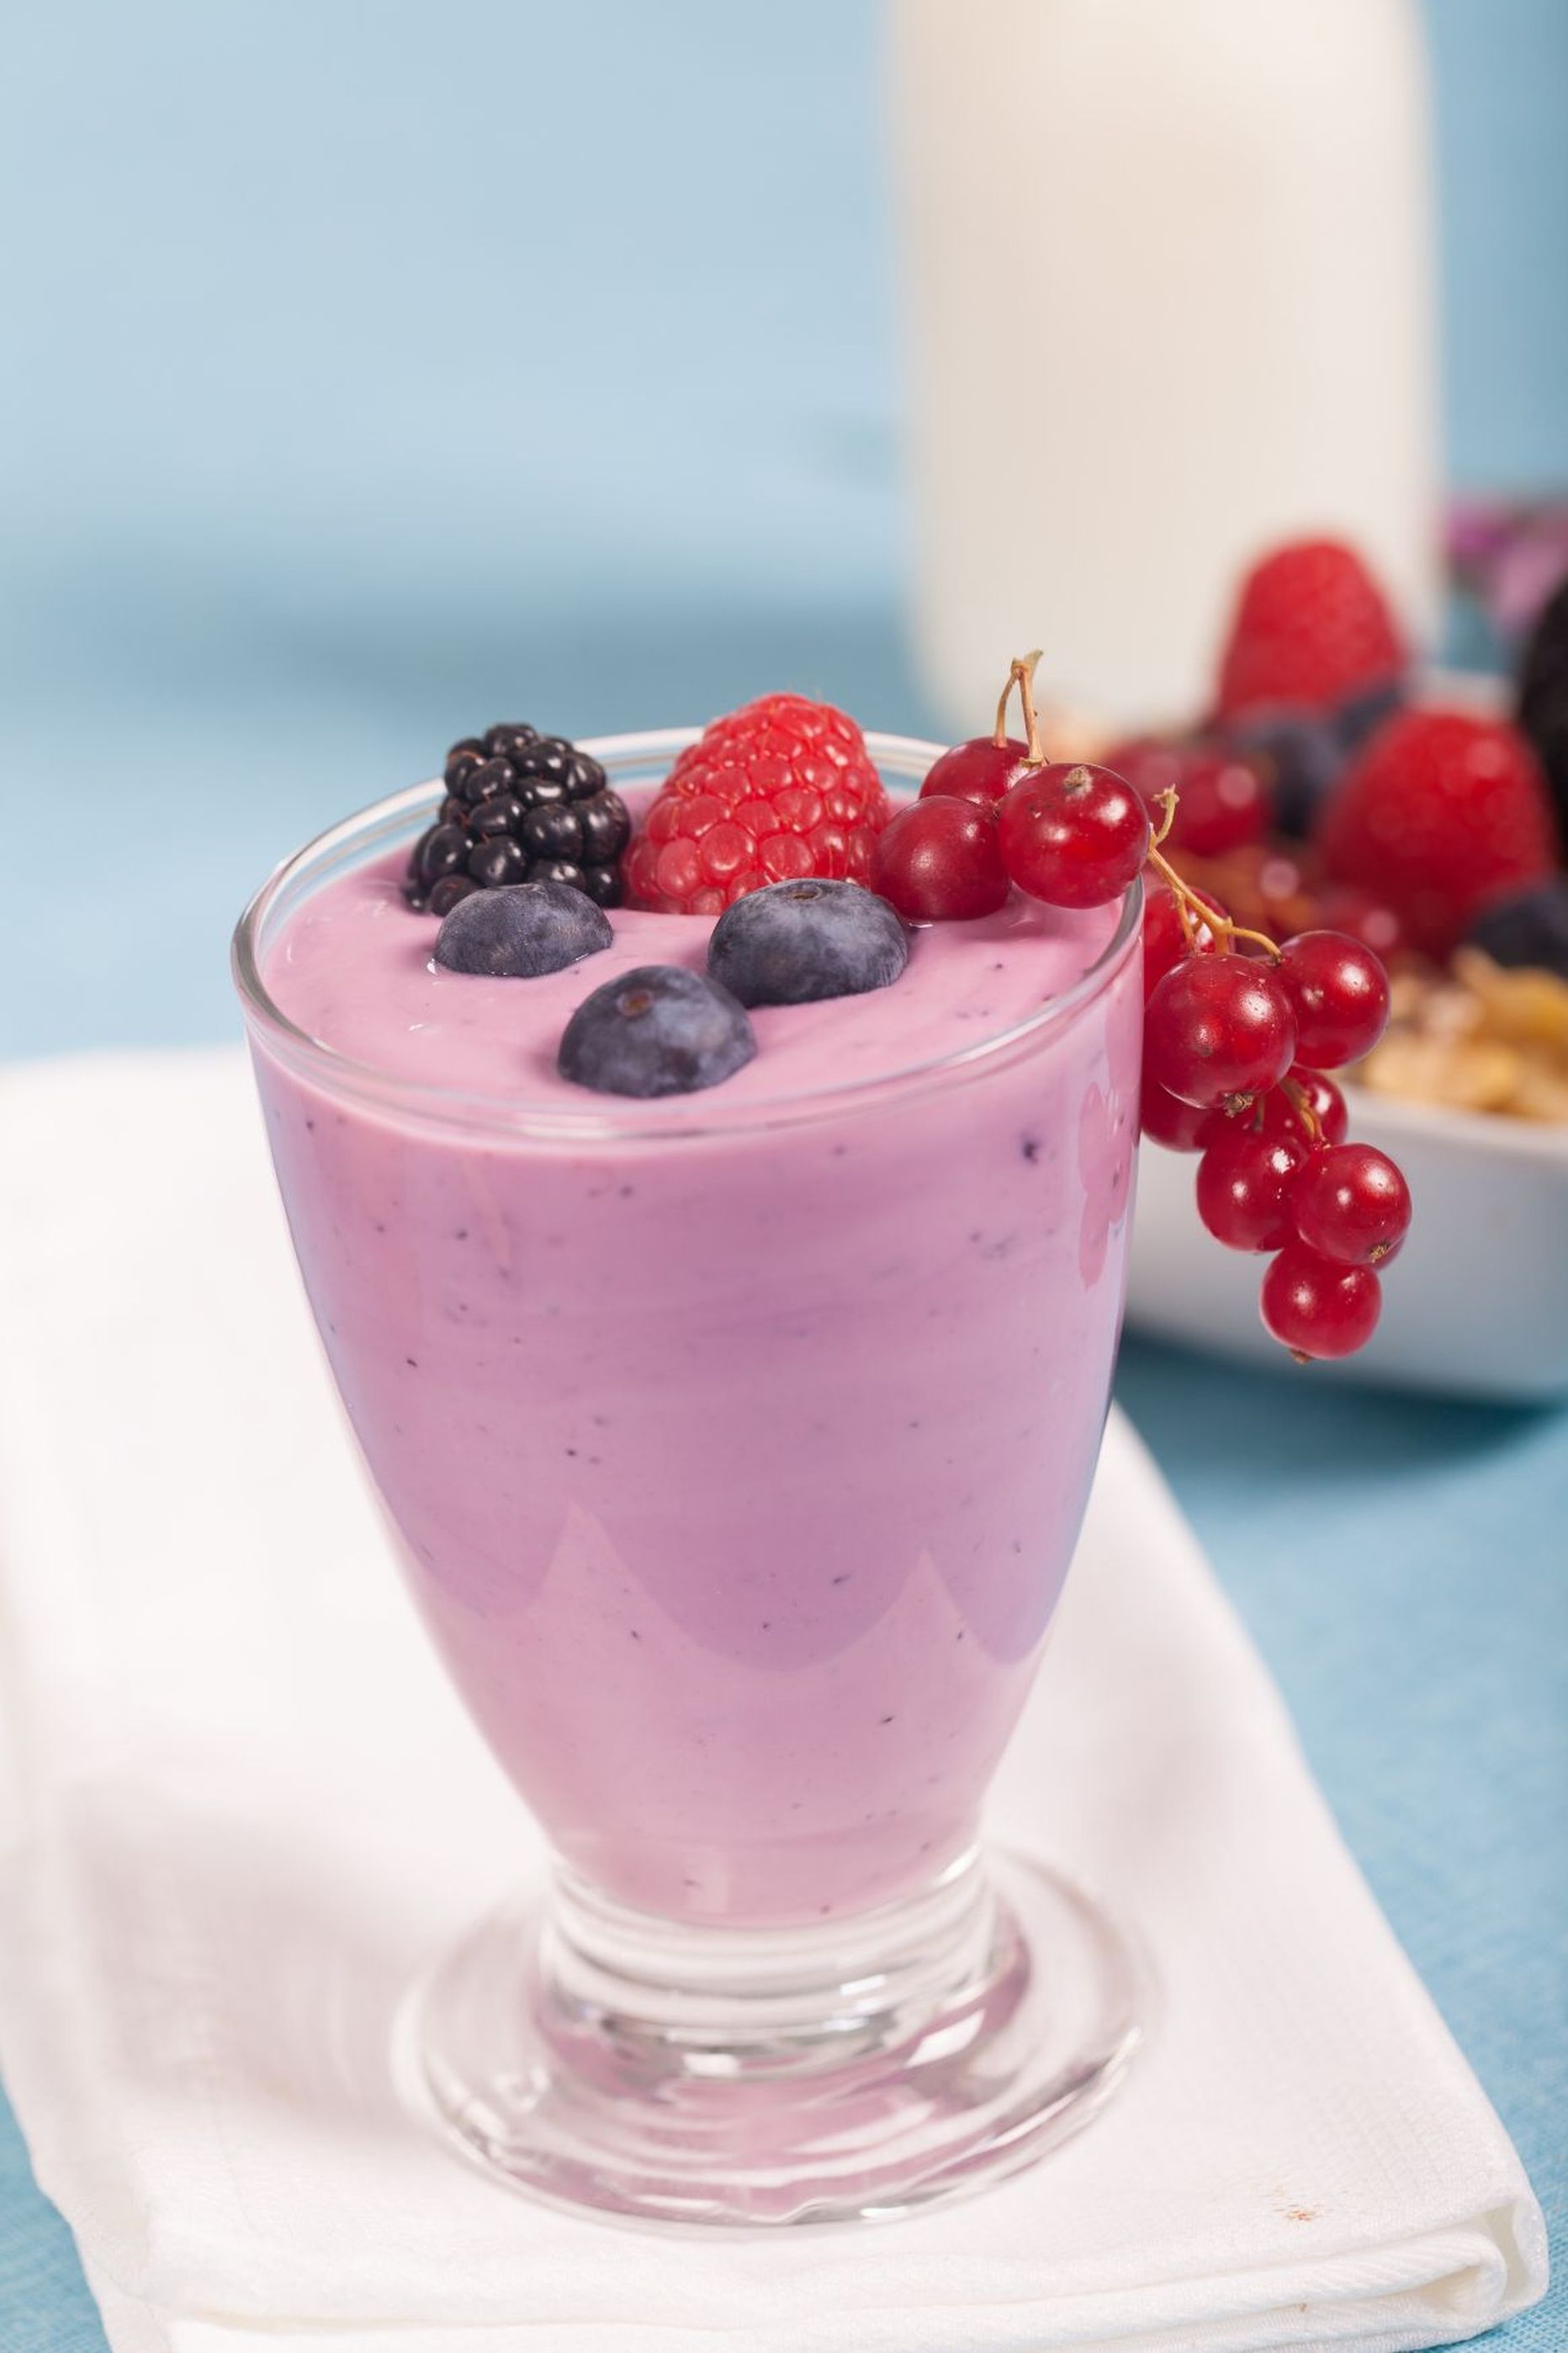 Mõistlikus koguses tarbides on tervislik nii jogurt kui ka kohupiimakreem.